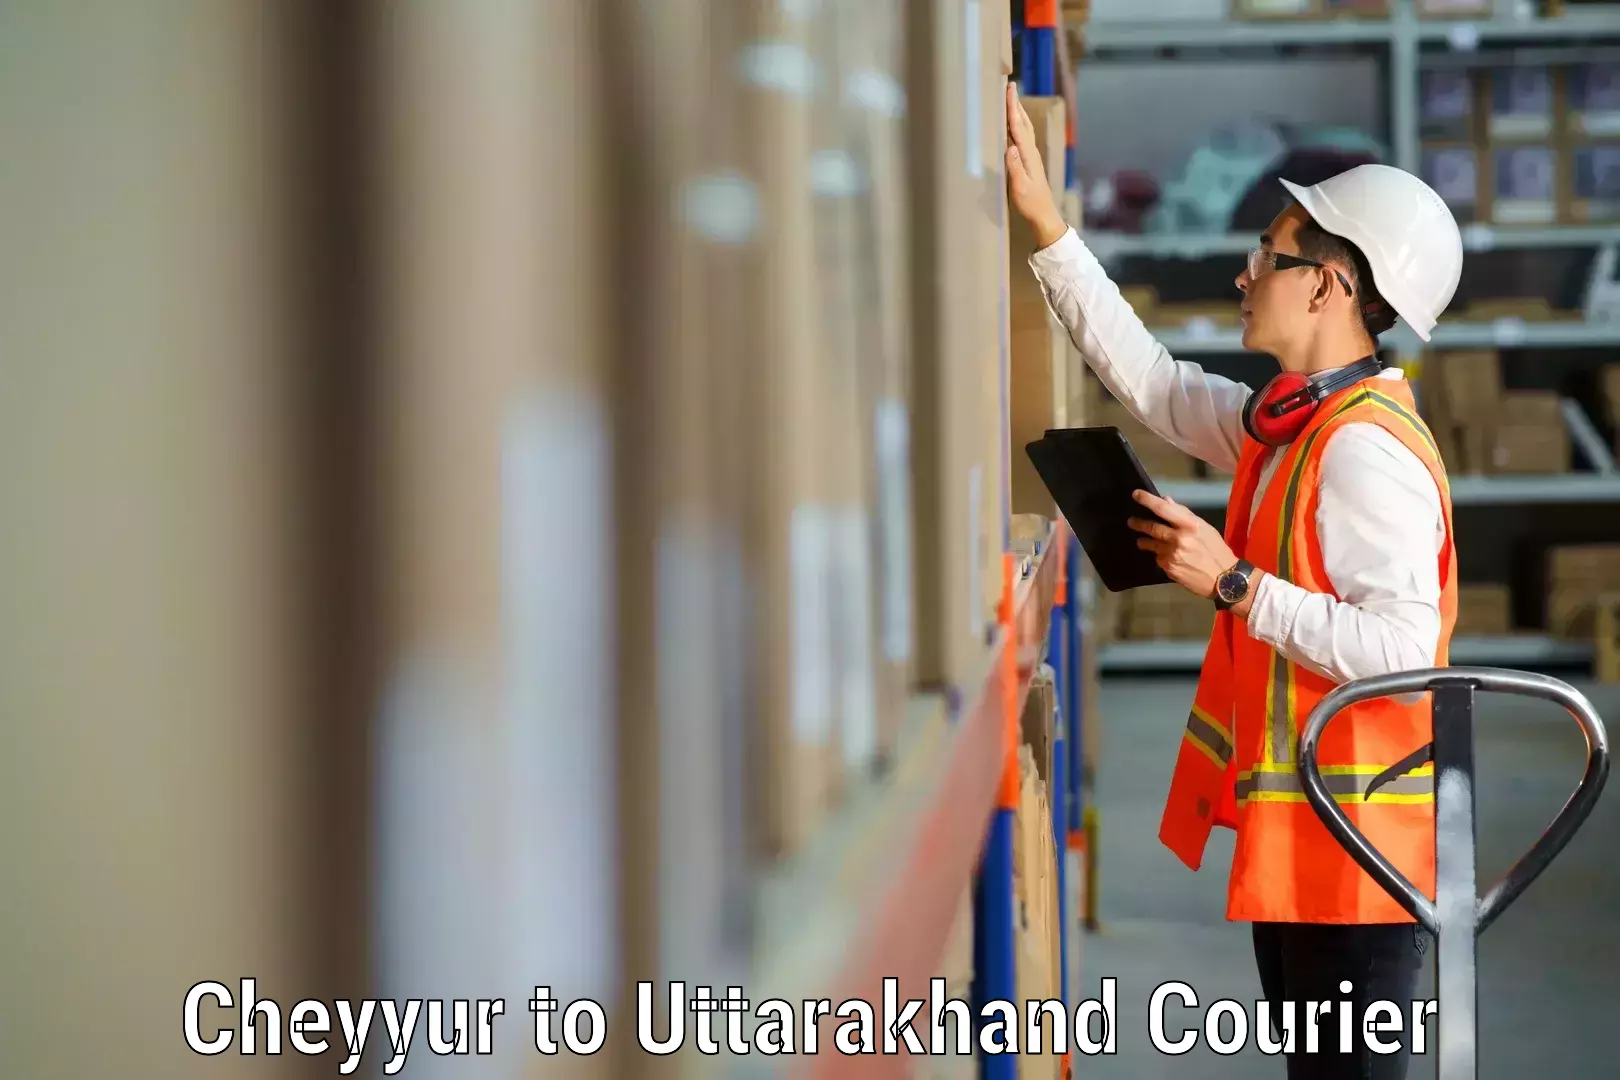 Efficient moving company Cheyyur to Uttarakhand